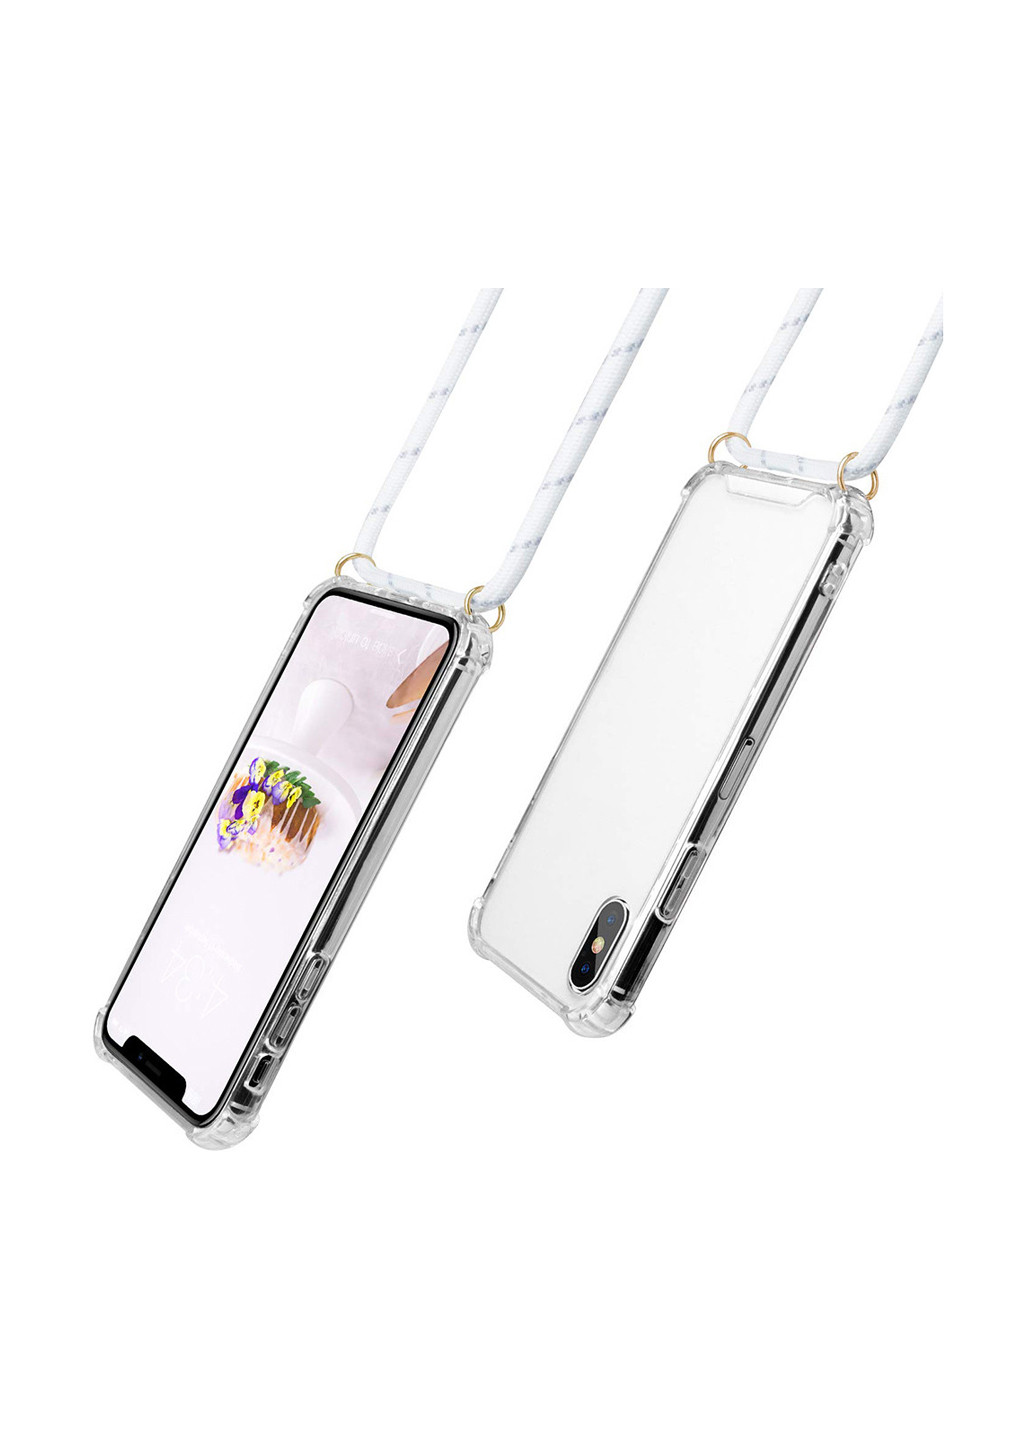 Силиконовый чехол Strap для Huawei Y6 2019 White (704279) BeCover strap для huawei y6 2019 white (704279) (154454138)